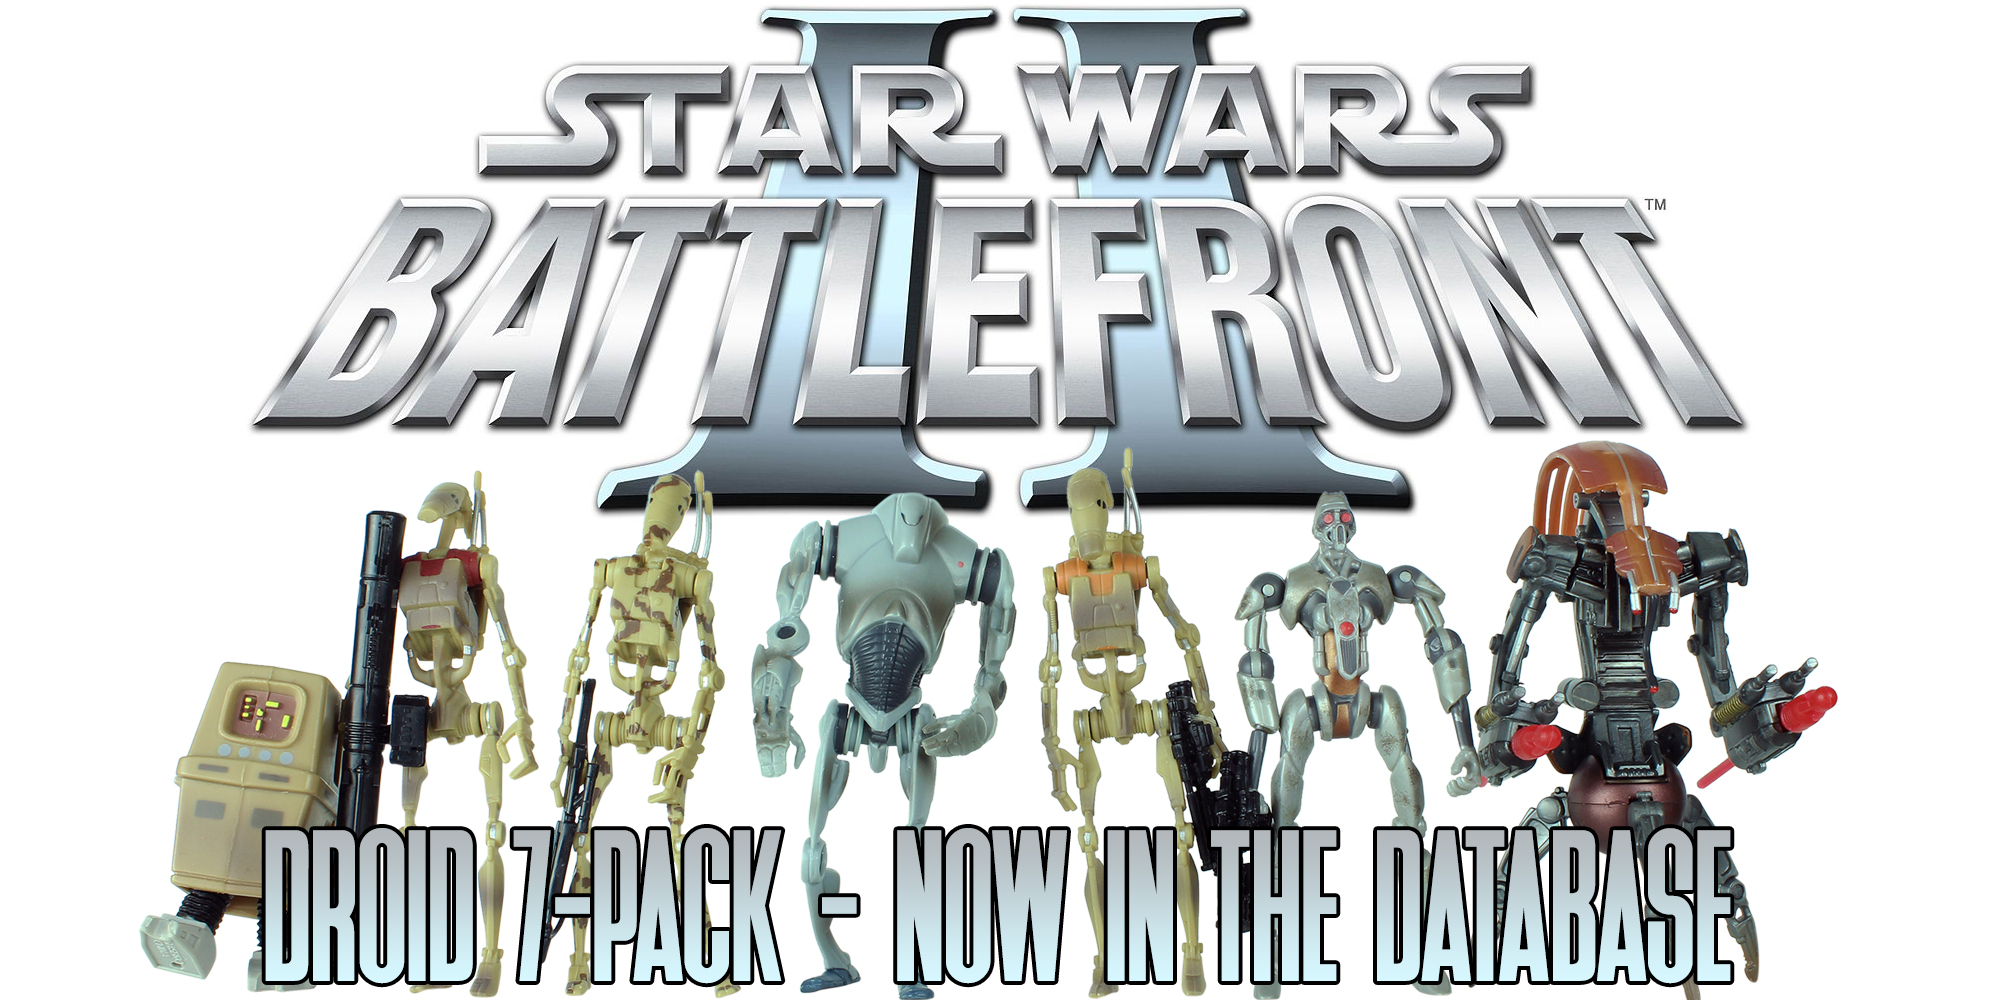 Star Wars Battlefront - Toygames